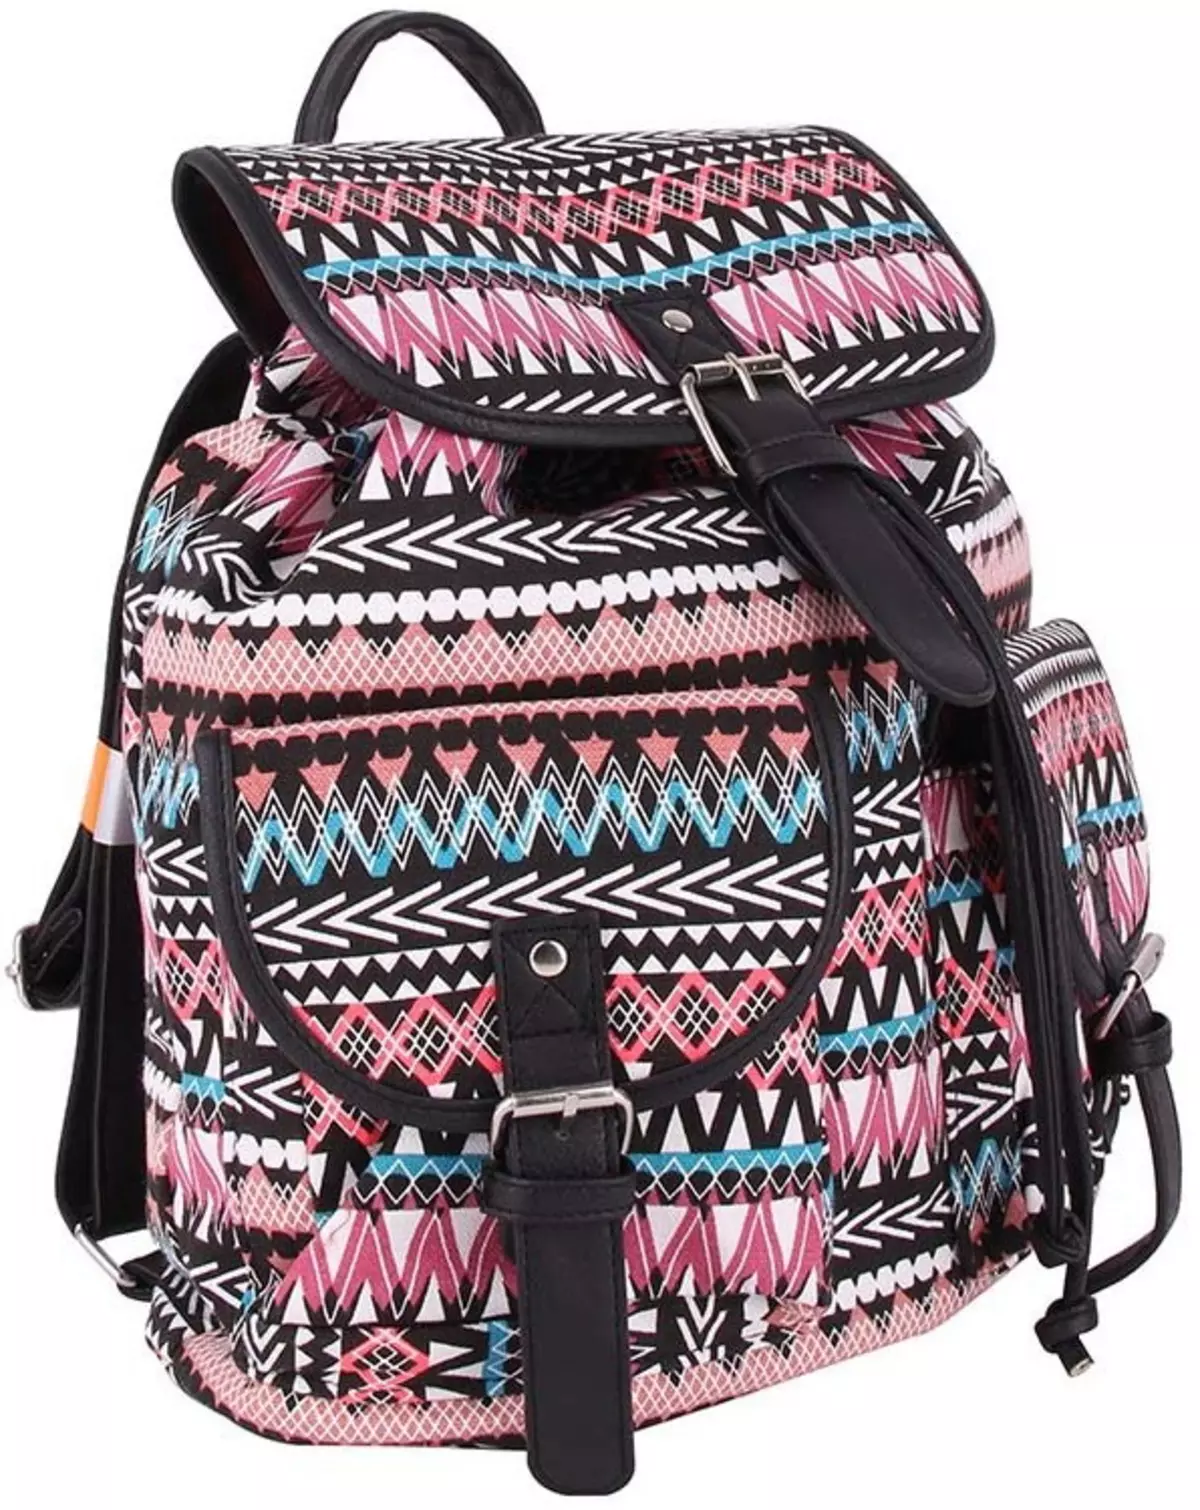 Рюкзаки Kari: огляд жіночих моделей, шкільні рюкзаки для дівчаток і хлопчиків, білі і чорні рюкзаки інших брендів, представлених в магазині 15431_8